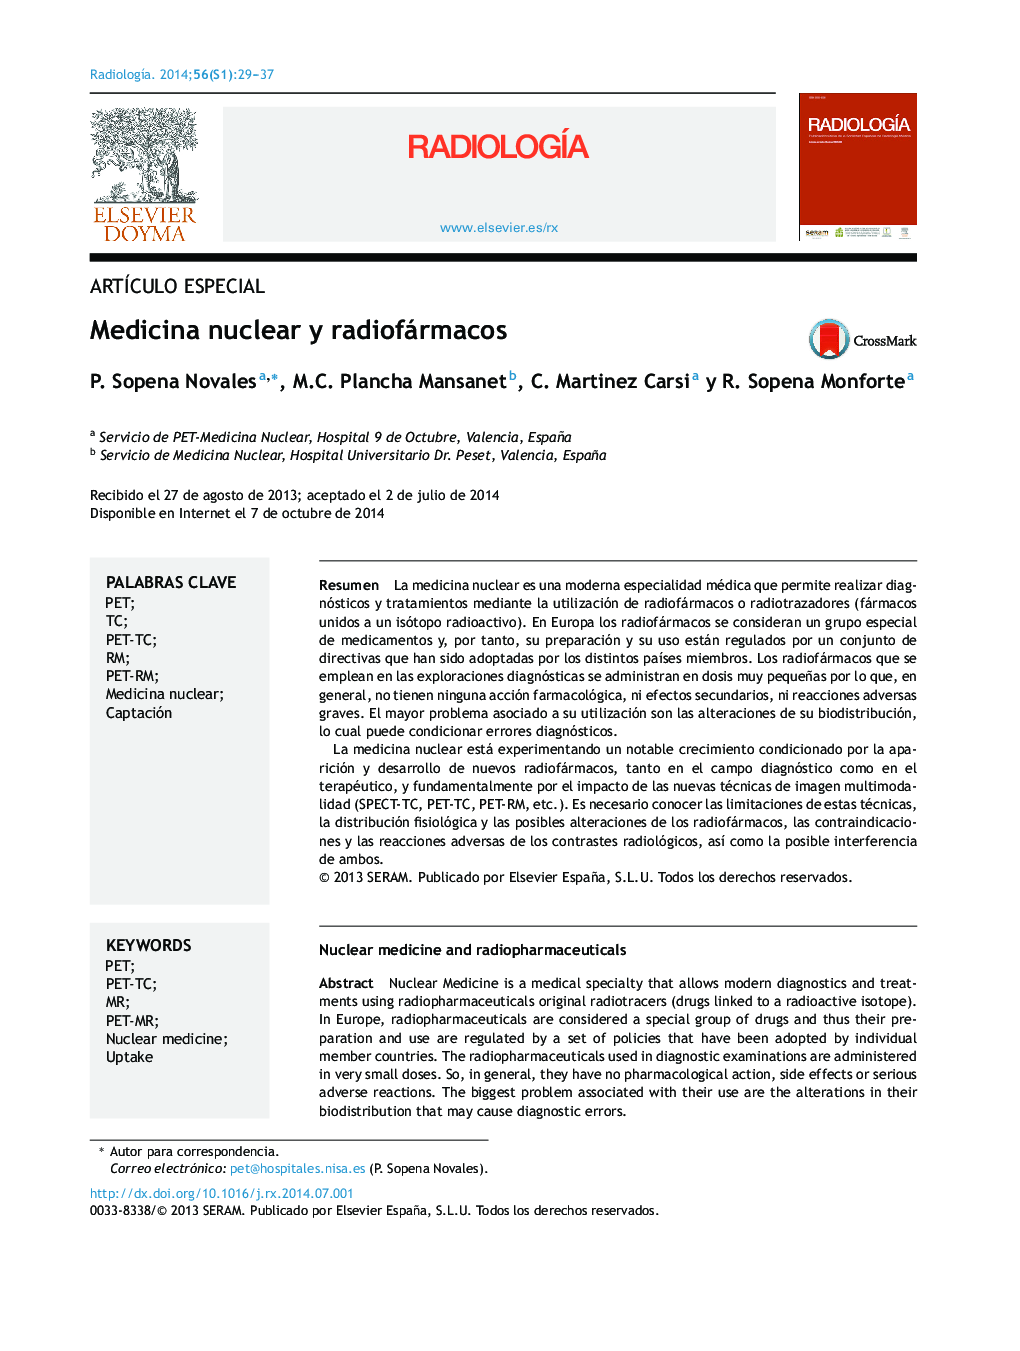 Medicina nuclear y radiofármacos